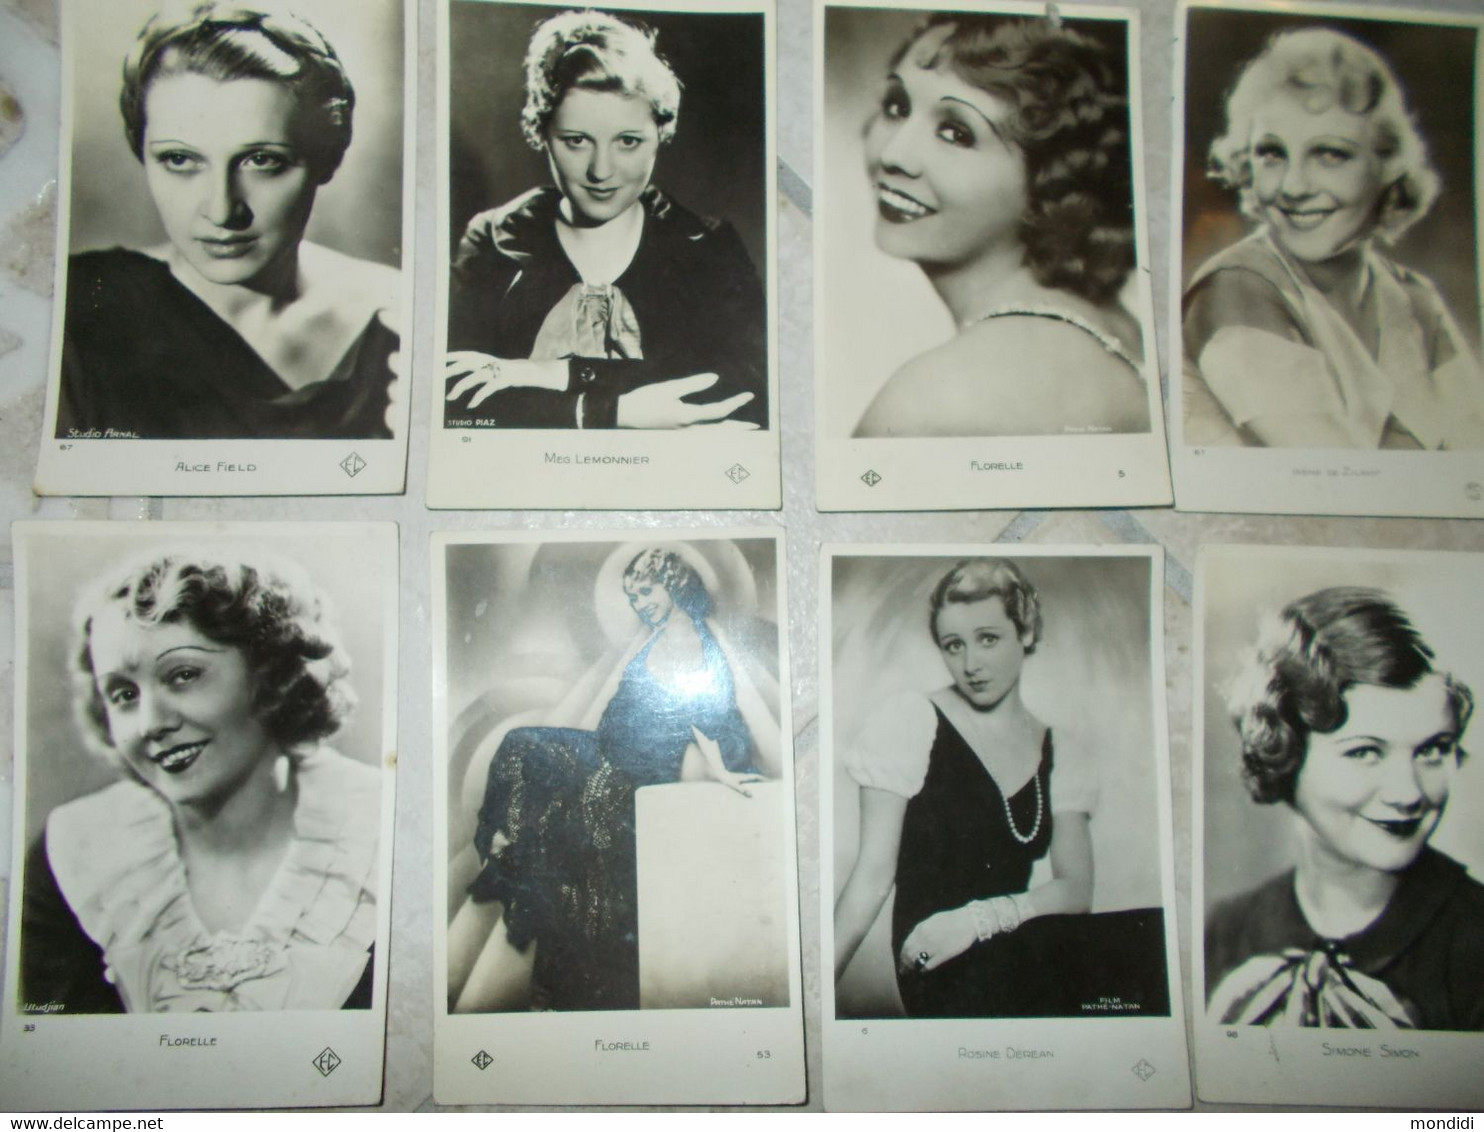 lot 30 cpa acteurs actrices cinema vintage 1930 1940 photographies dont 1 studio harcourt avant guerre chanson pathé